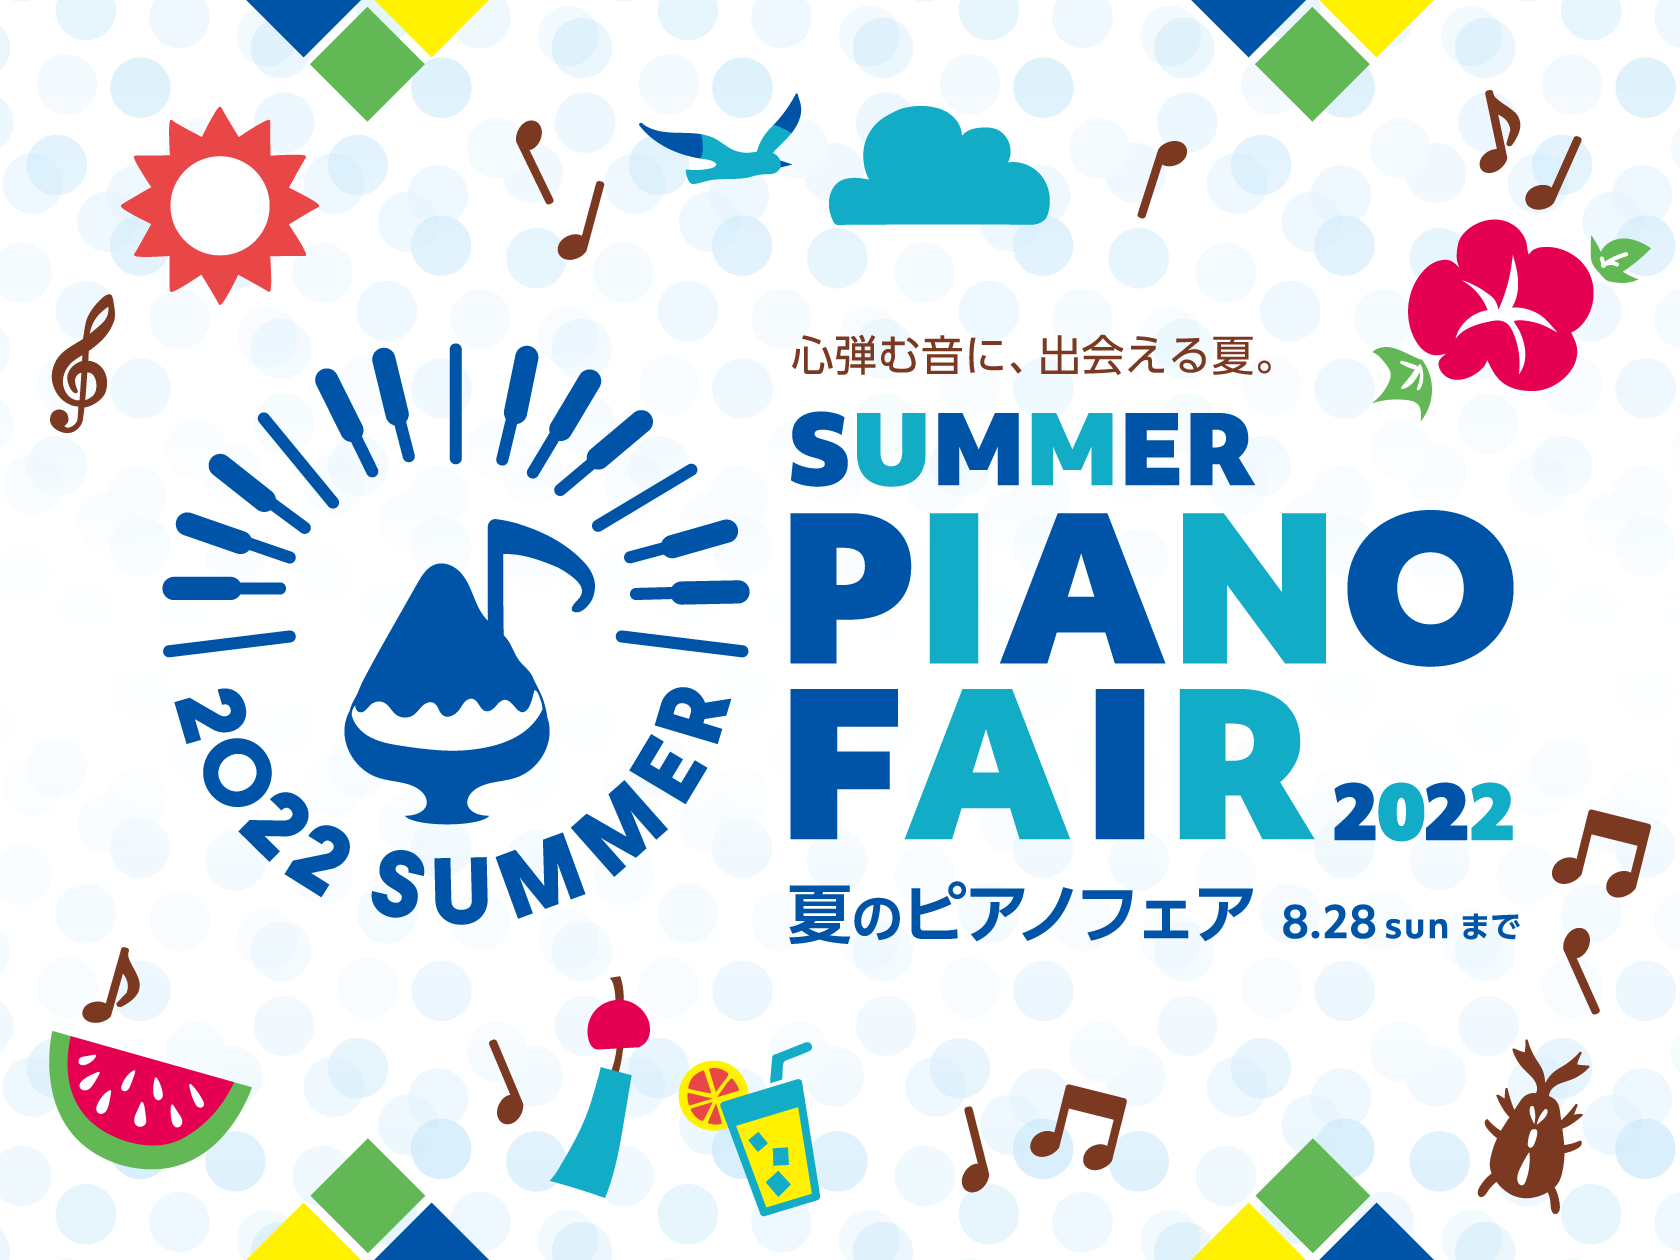 CONTENTS夏のピアノフェア　5月21日（土）から8月28日（日）まで開催！島村楽器ららぽーと磐田店でピアノ選びおすすめピアノ5選！ご相談・お問い合わせは・・・夏のピアノフェア　5月21日（土）から8月28日（日）まで開催！ ただいま島村楽器では2022年夏のピアノフェアを開催中！期間中対象商品 […]